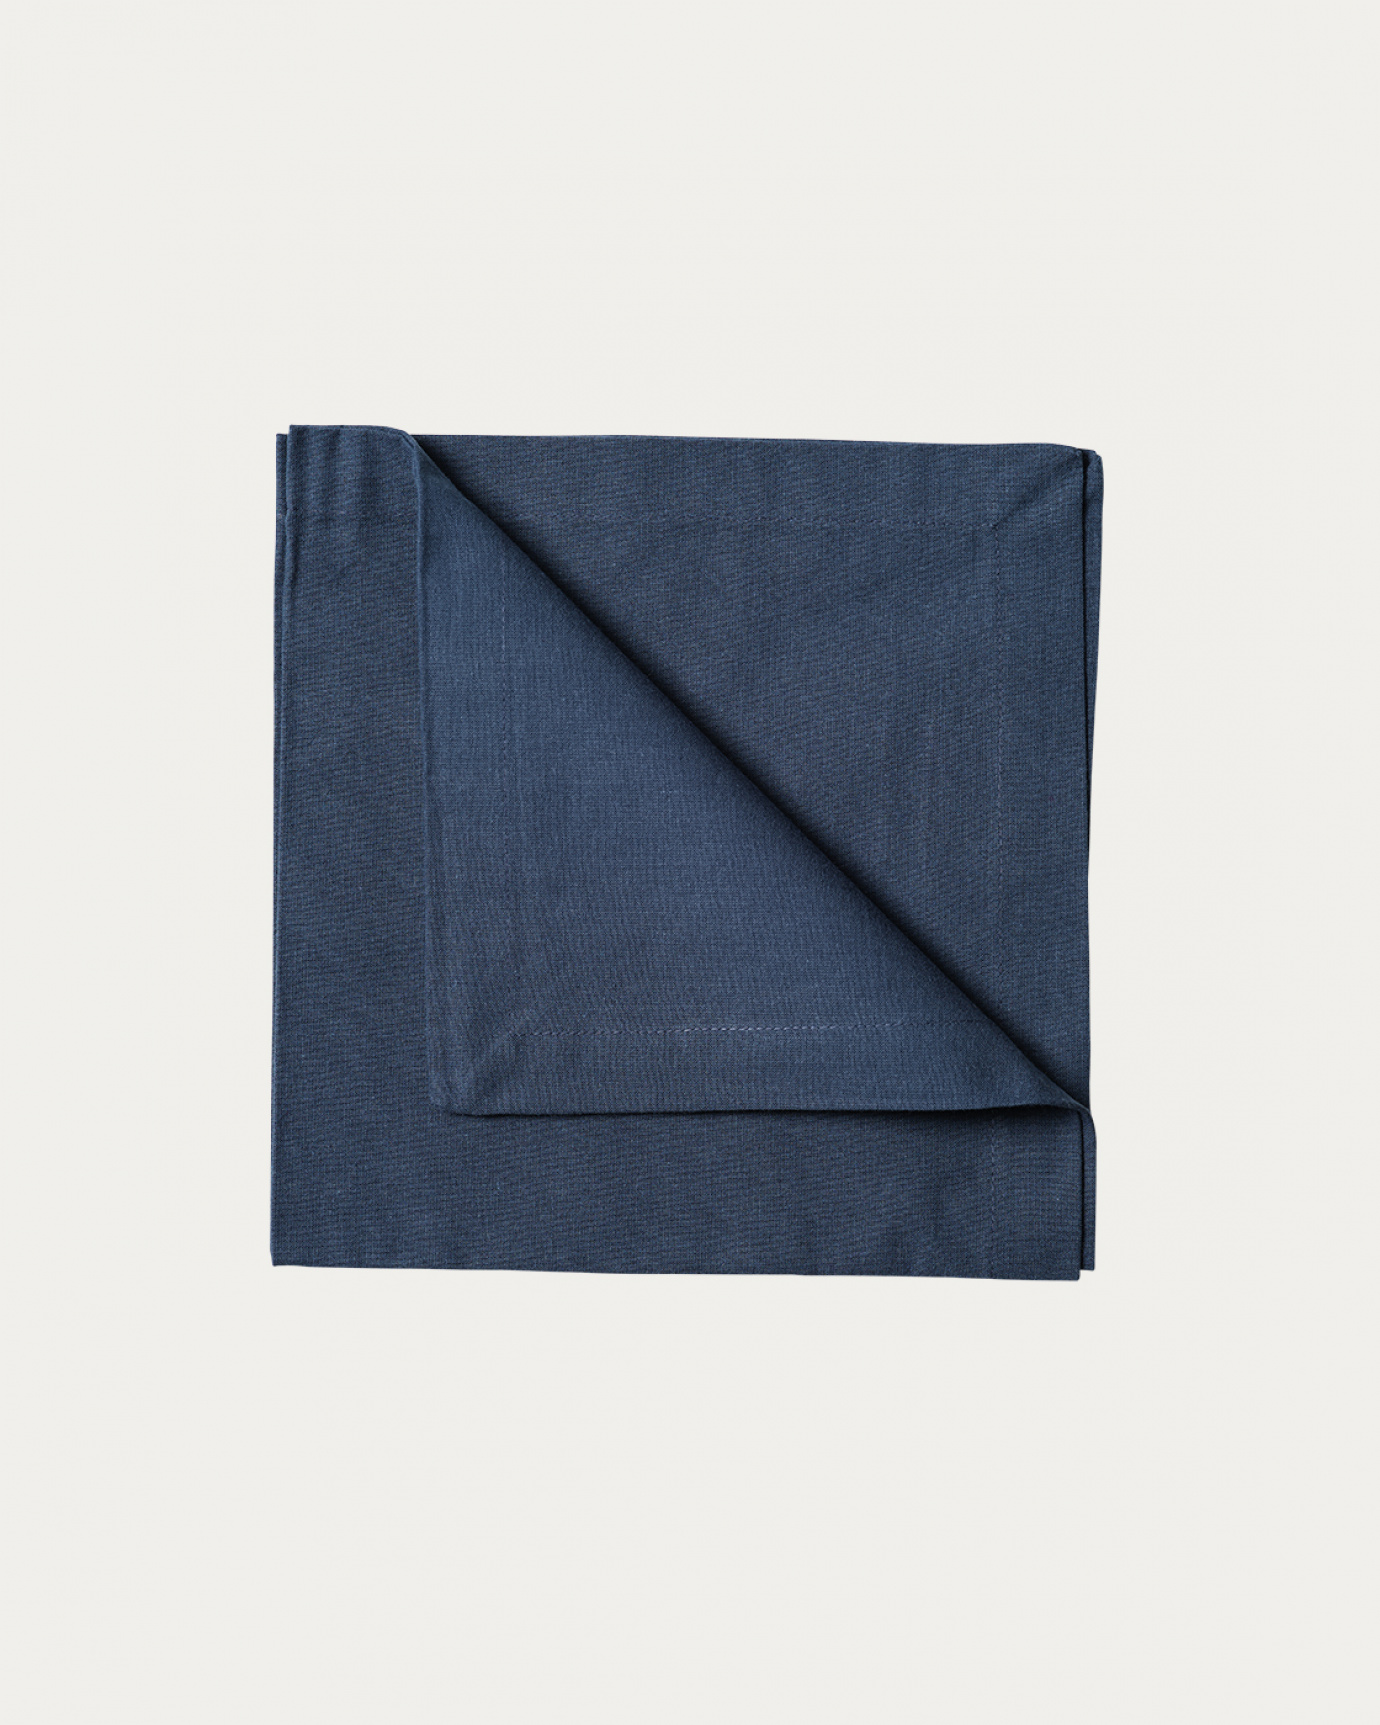 Immagine prodotto blu indaco ROBERT tovagliolo in morbido cotone di LINUM DESIGN. Dimensioni 45x45 cm e venduto in 4-pezzi.